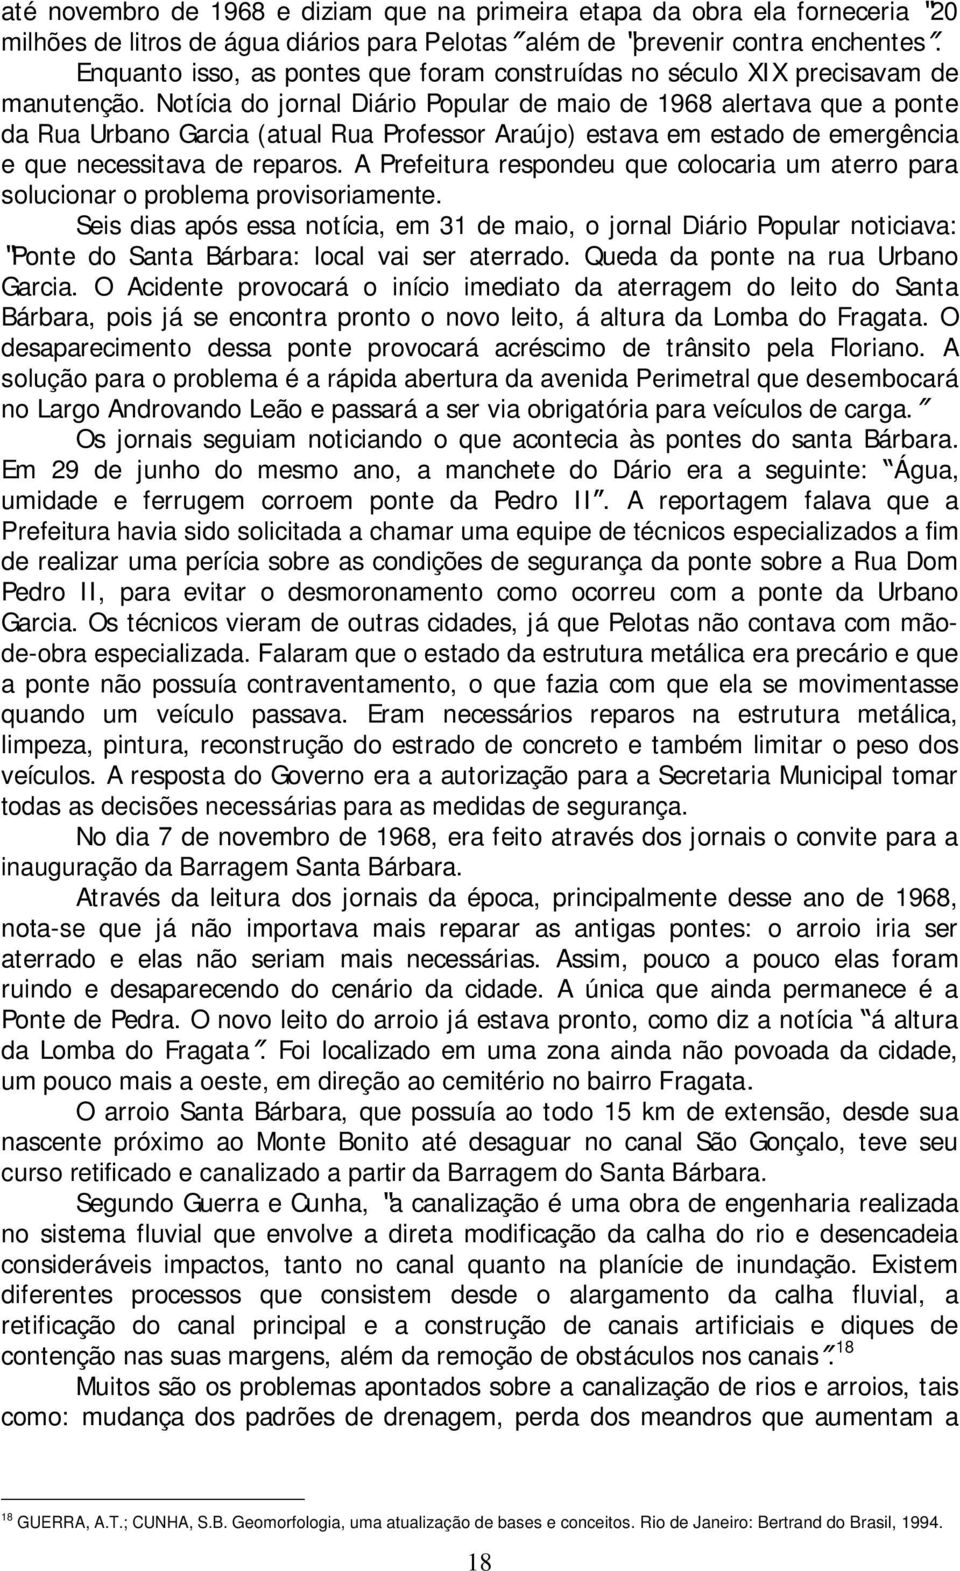 Notícia do jornal Diário Popular de maio de 1968 alertava que a ponte da Rua Urbano Garcia (atual Rua Professor Araújo) estava em estado de emergência e que necessitava de reparos.